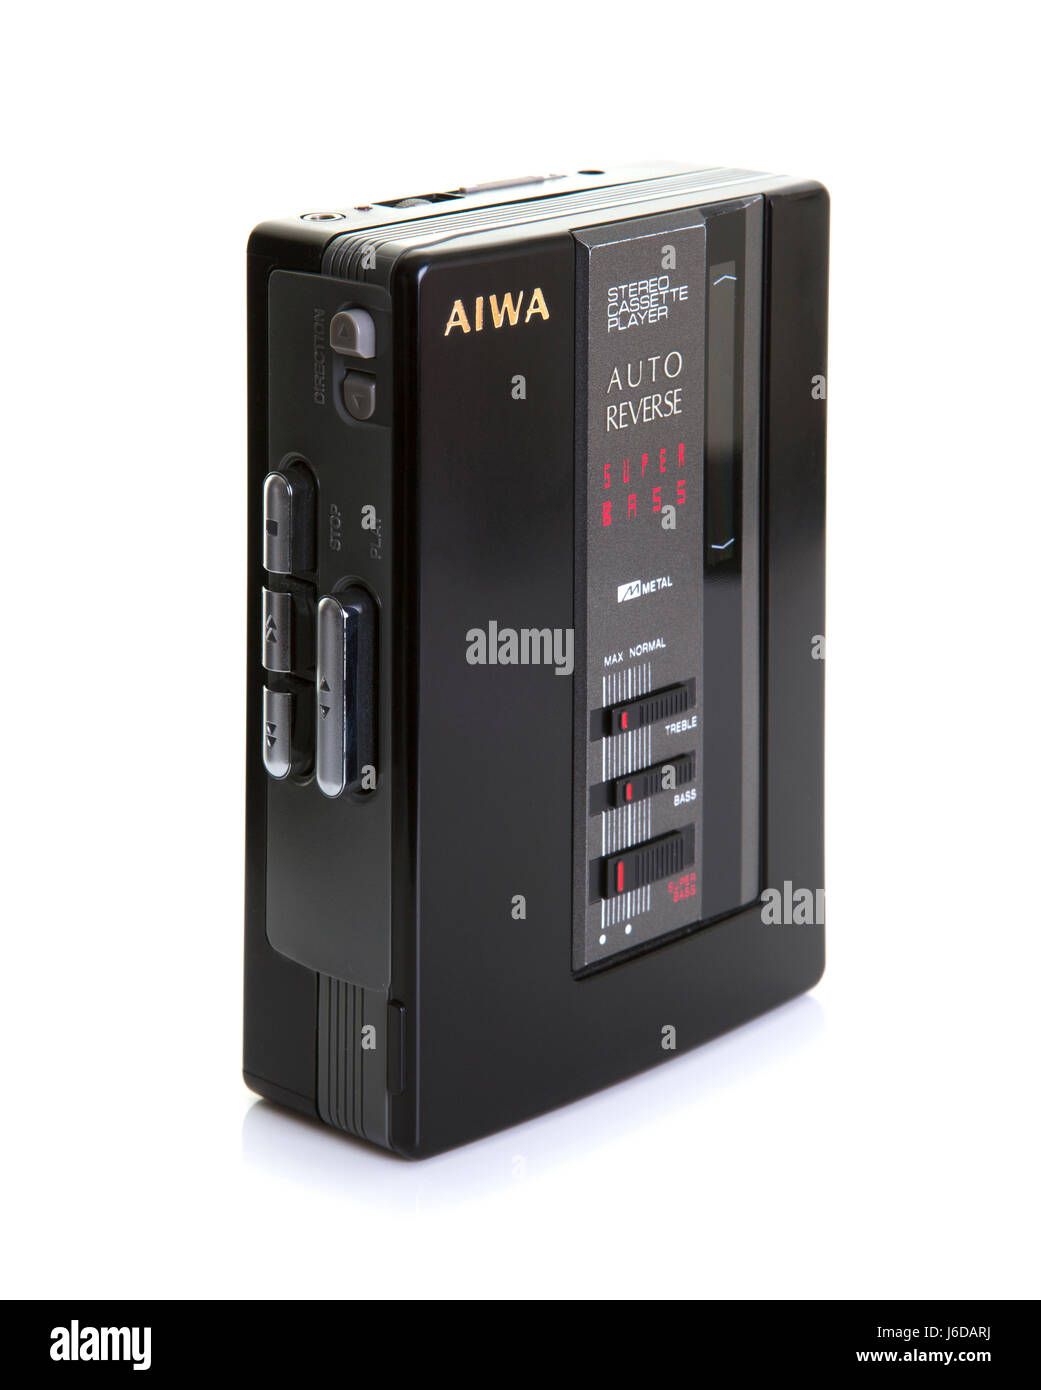 SWINDON, Regno Unito - 20 Maggio 2017: AIWA Autoreverse Cassette Stereo Player su uno sfondo bianco Foto Stock